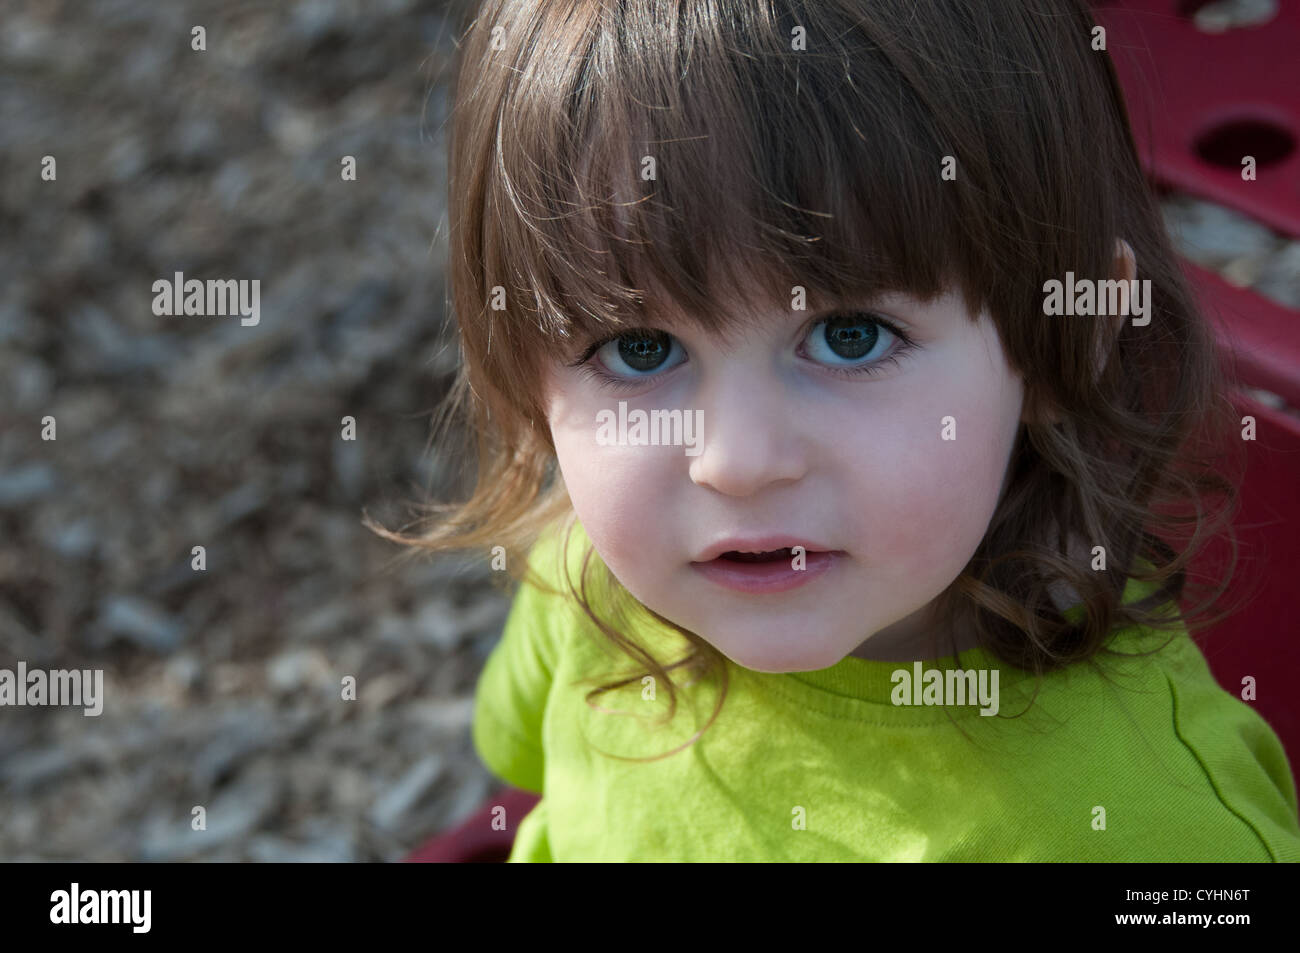 Retrato de un niño de 2 años. Foto de stock